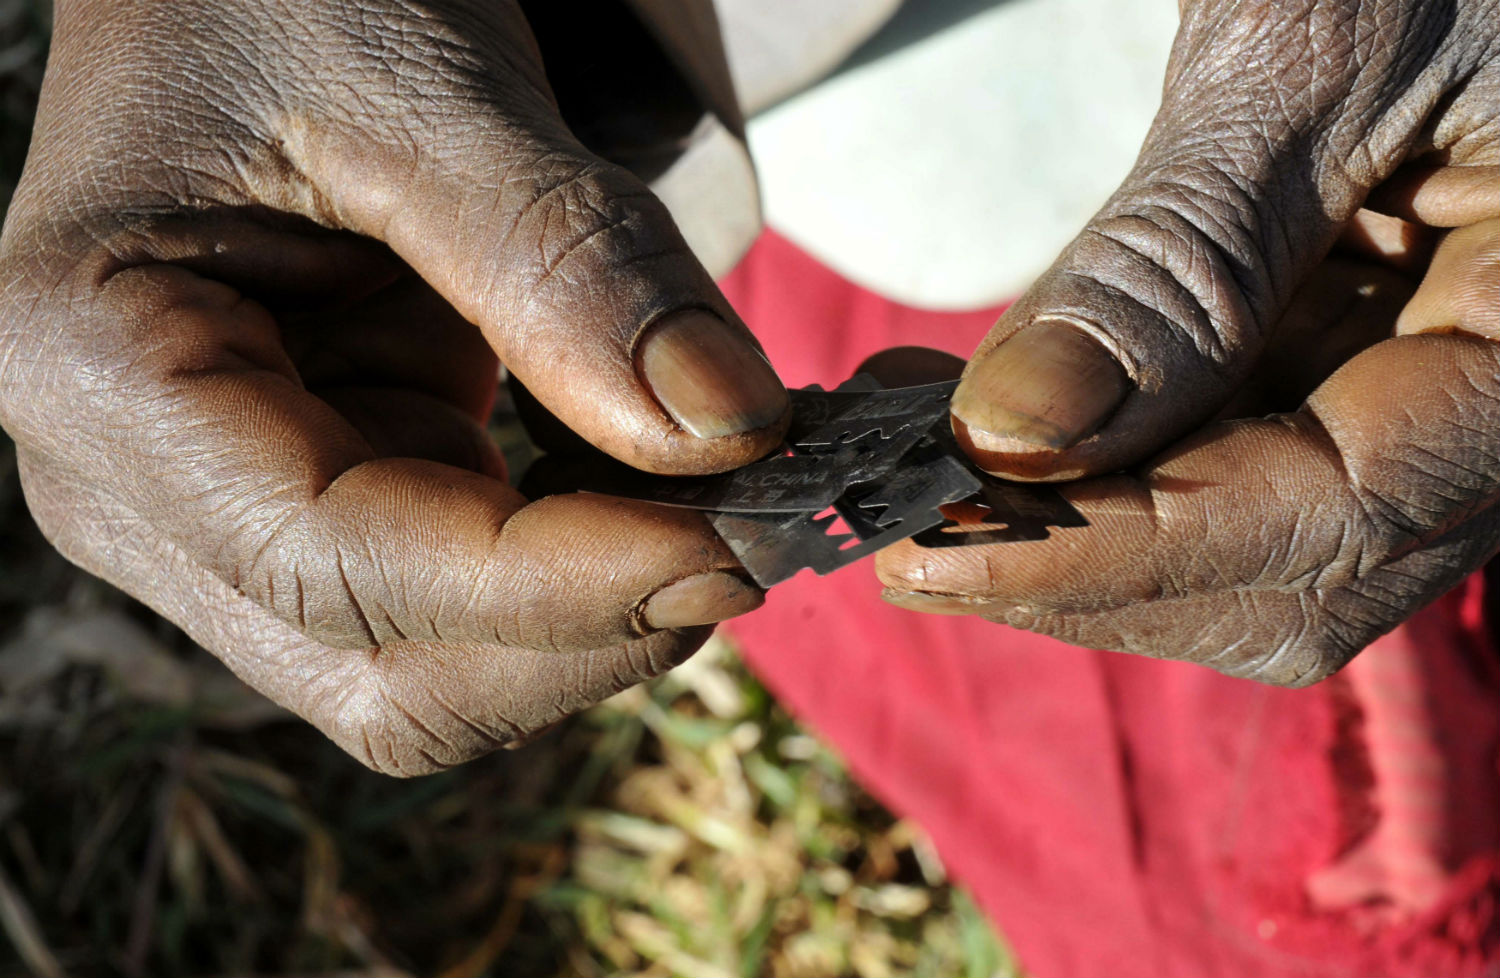 Prisca Korein, un cirujano tradicional de 62 años de edad, tiene hojas de afeitar antes de llevar a cabo la mutilación genital femenina en las adolescentes de la tribu sebei en el distrito Bukwa, a unos 357 km (214 millas) al noreste de Kampala, 15 de diciembre de 200